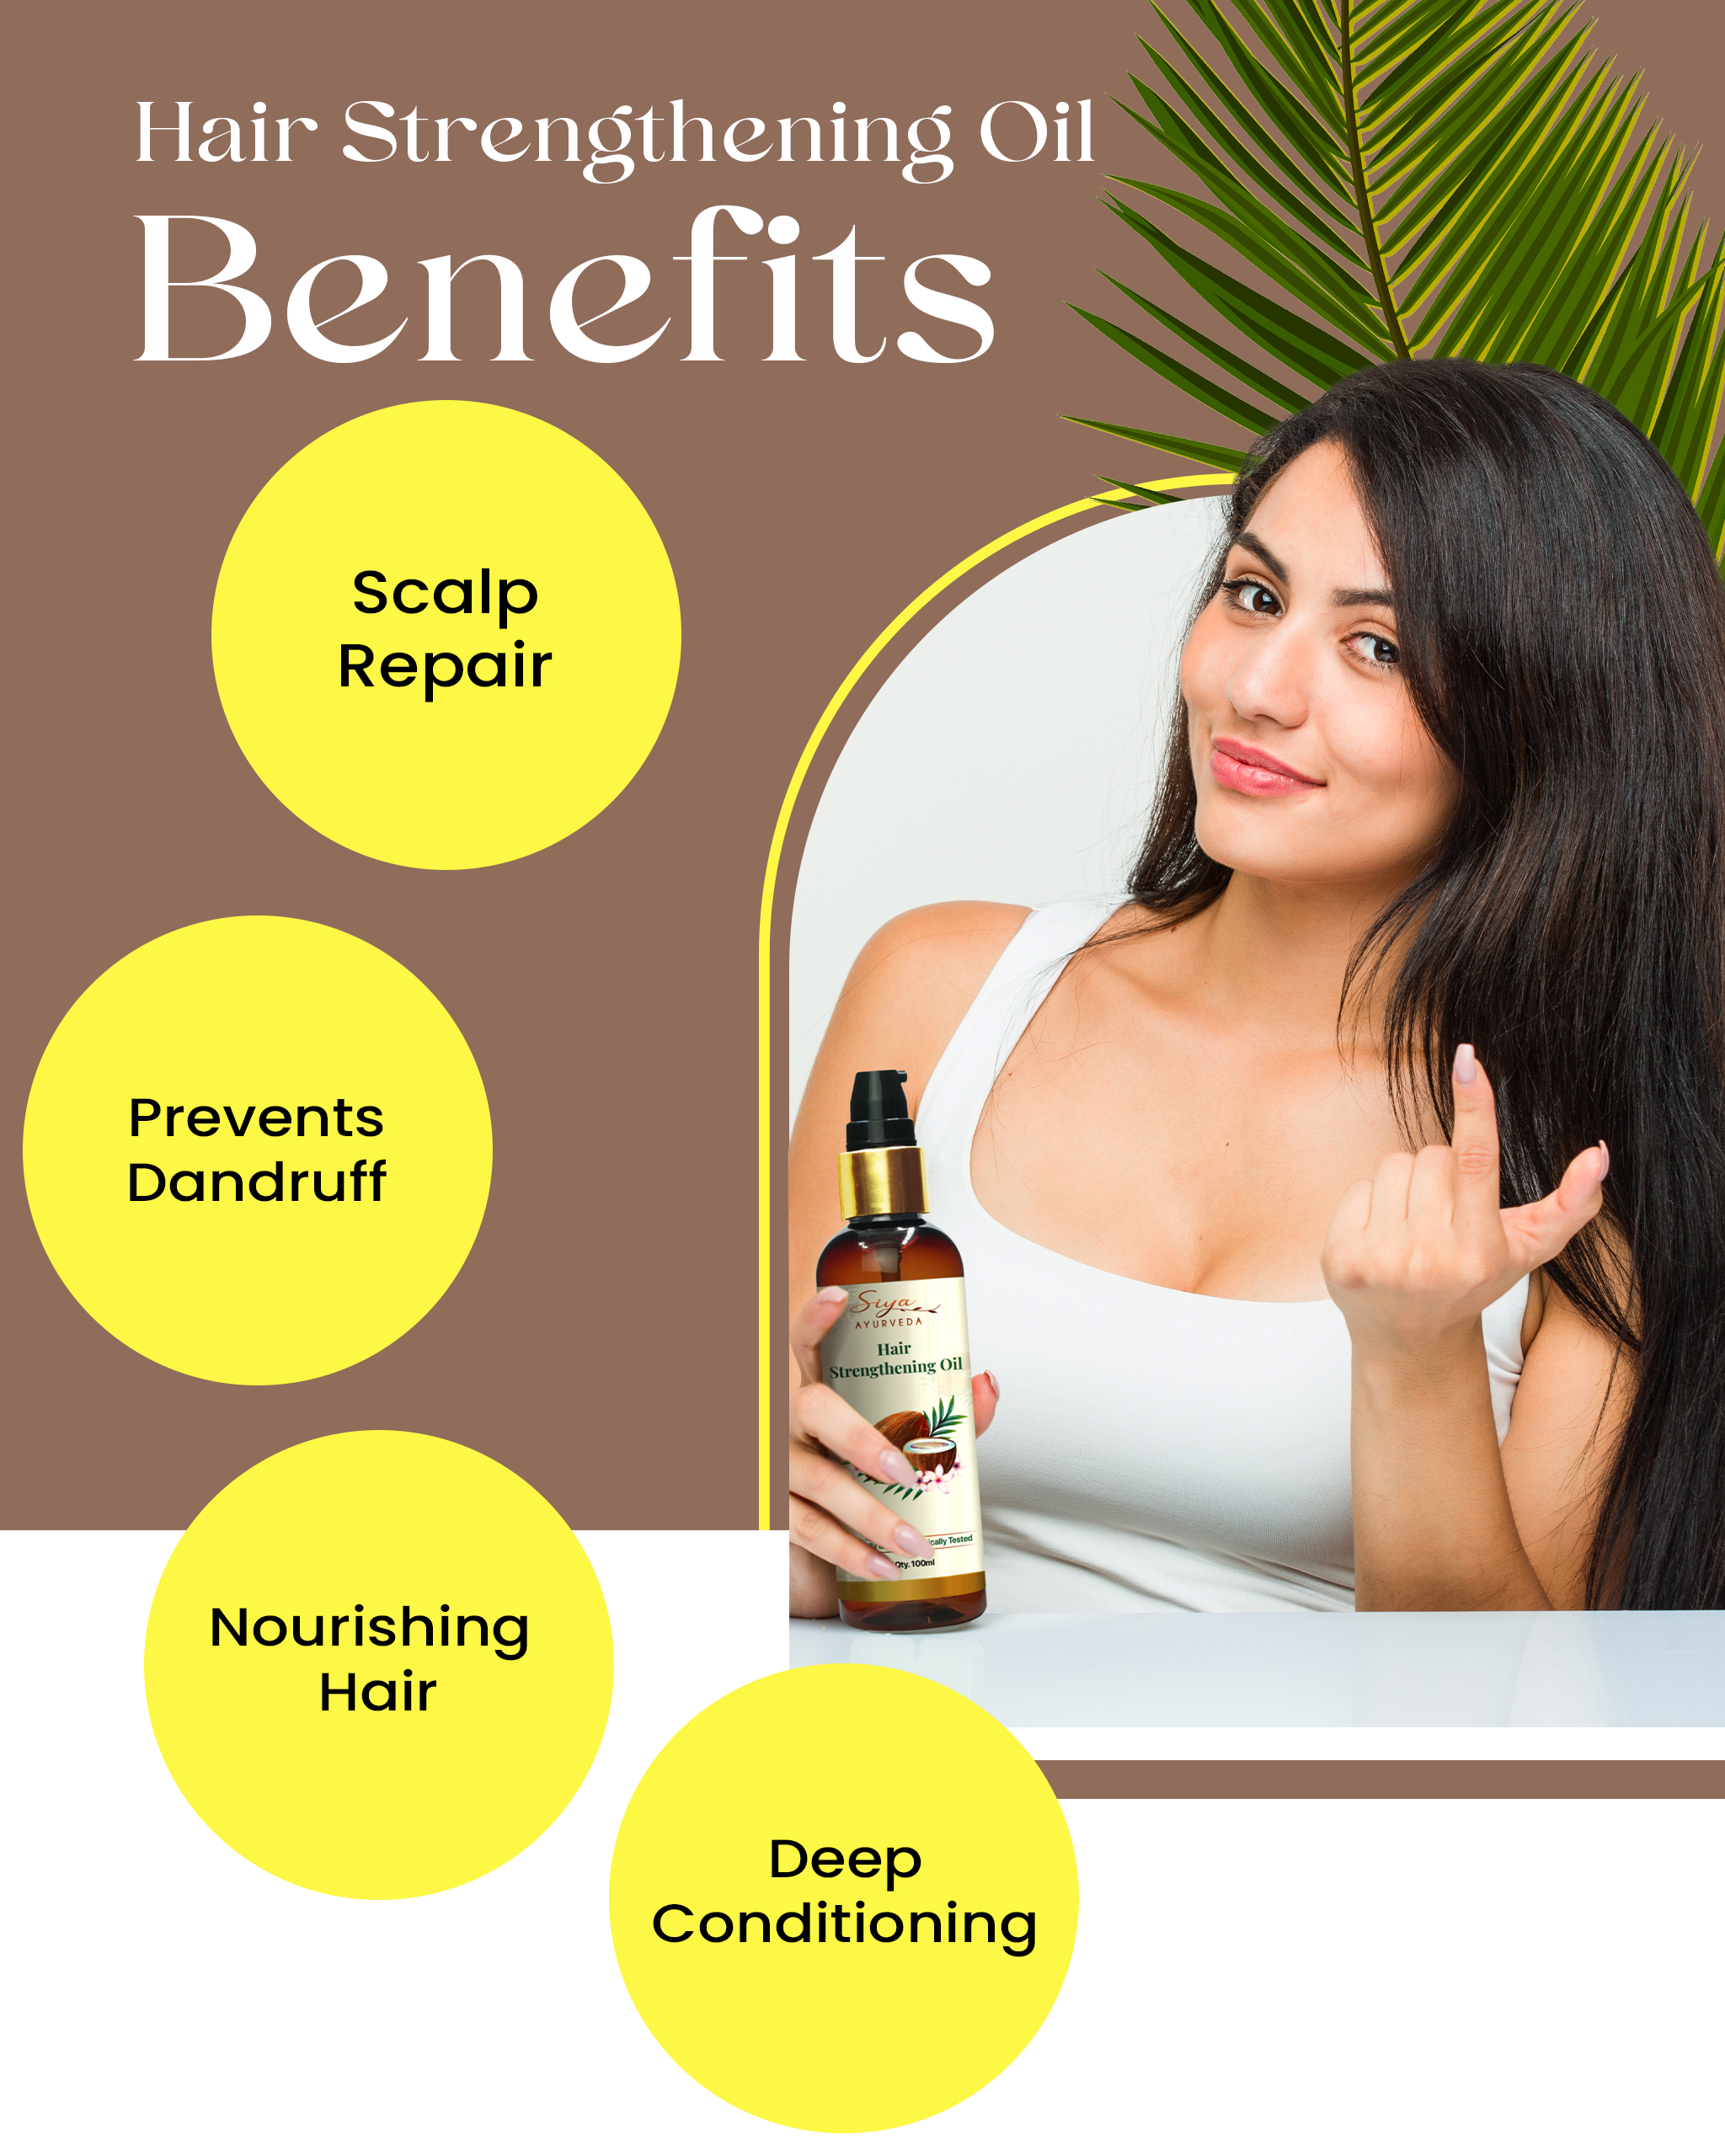 Benefits of Hair Strengthening Oil